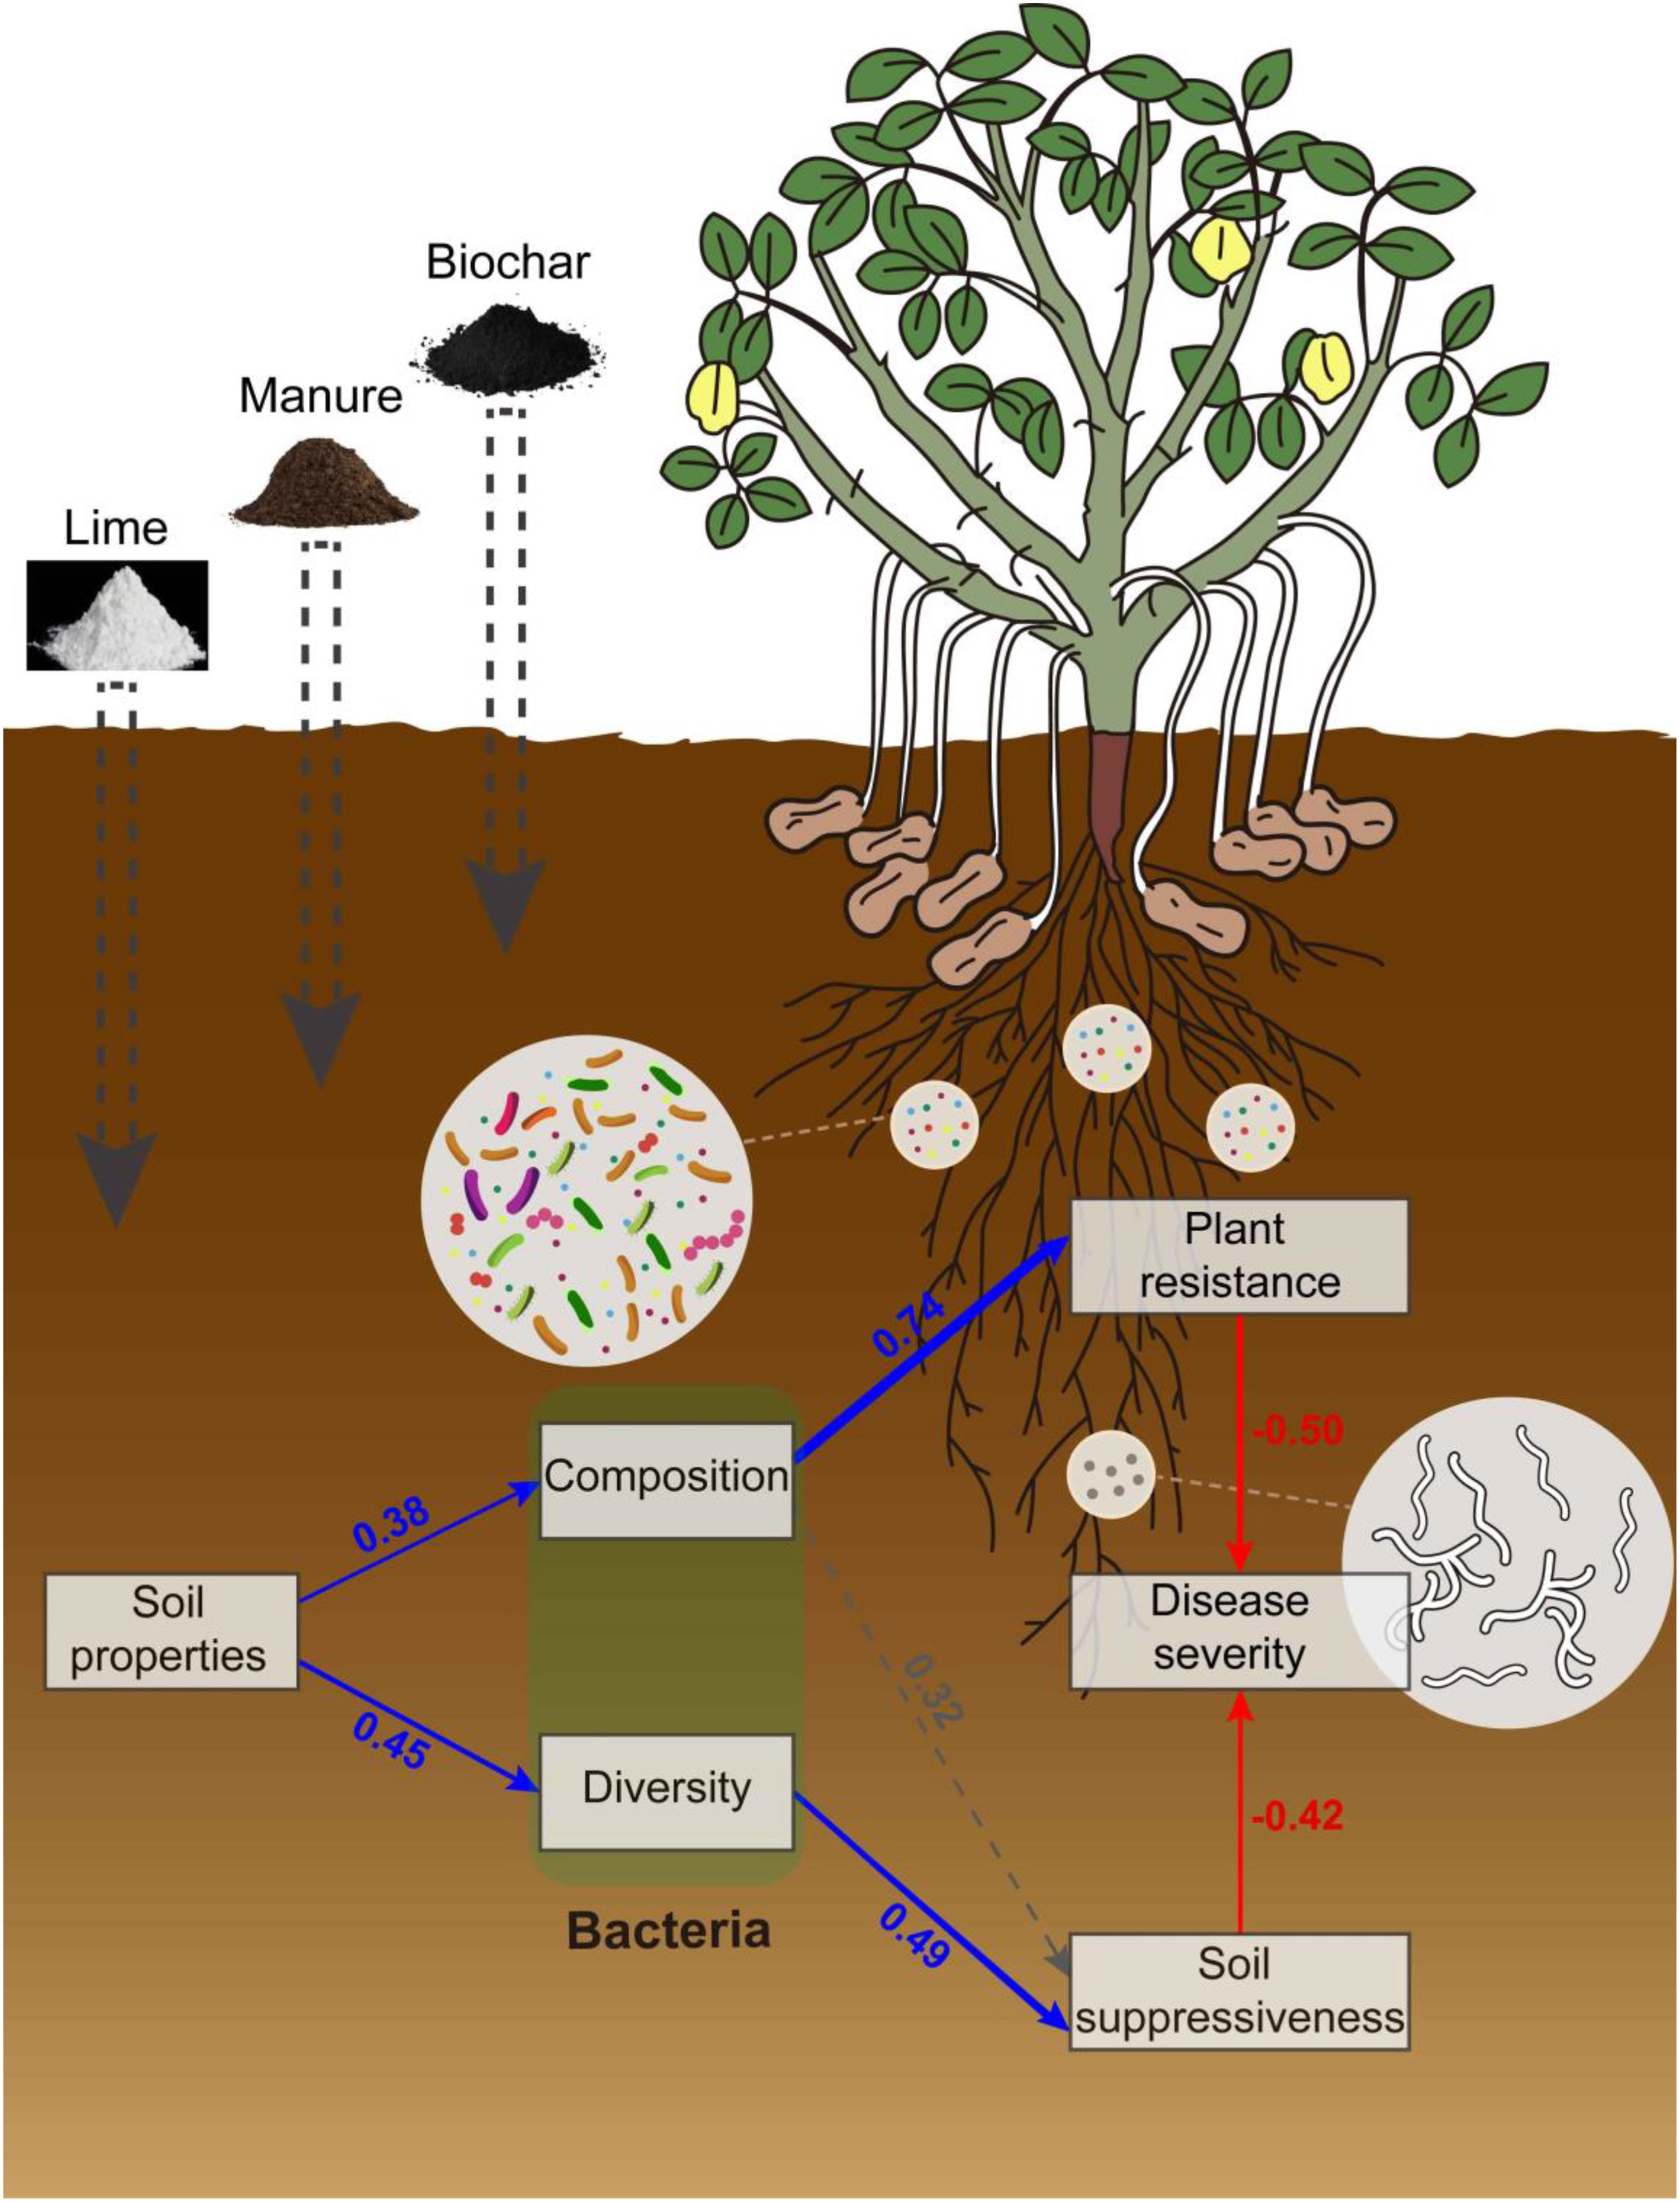 图 酸性土壤改良防控土传病害机制示意图